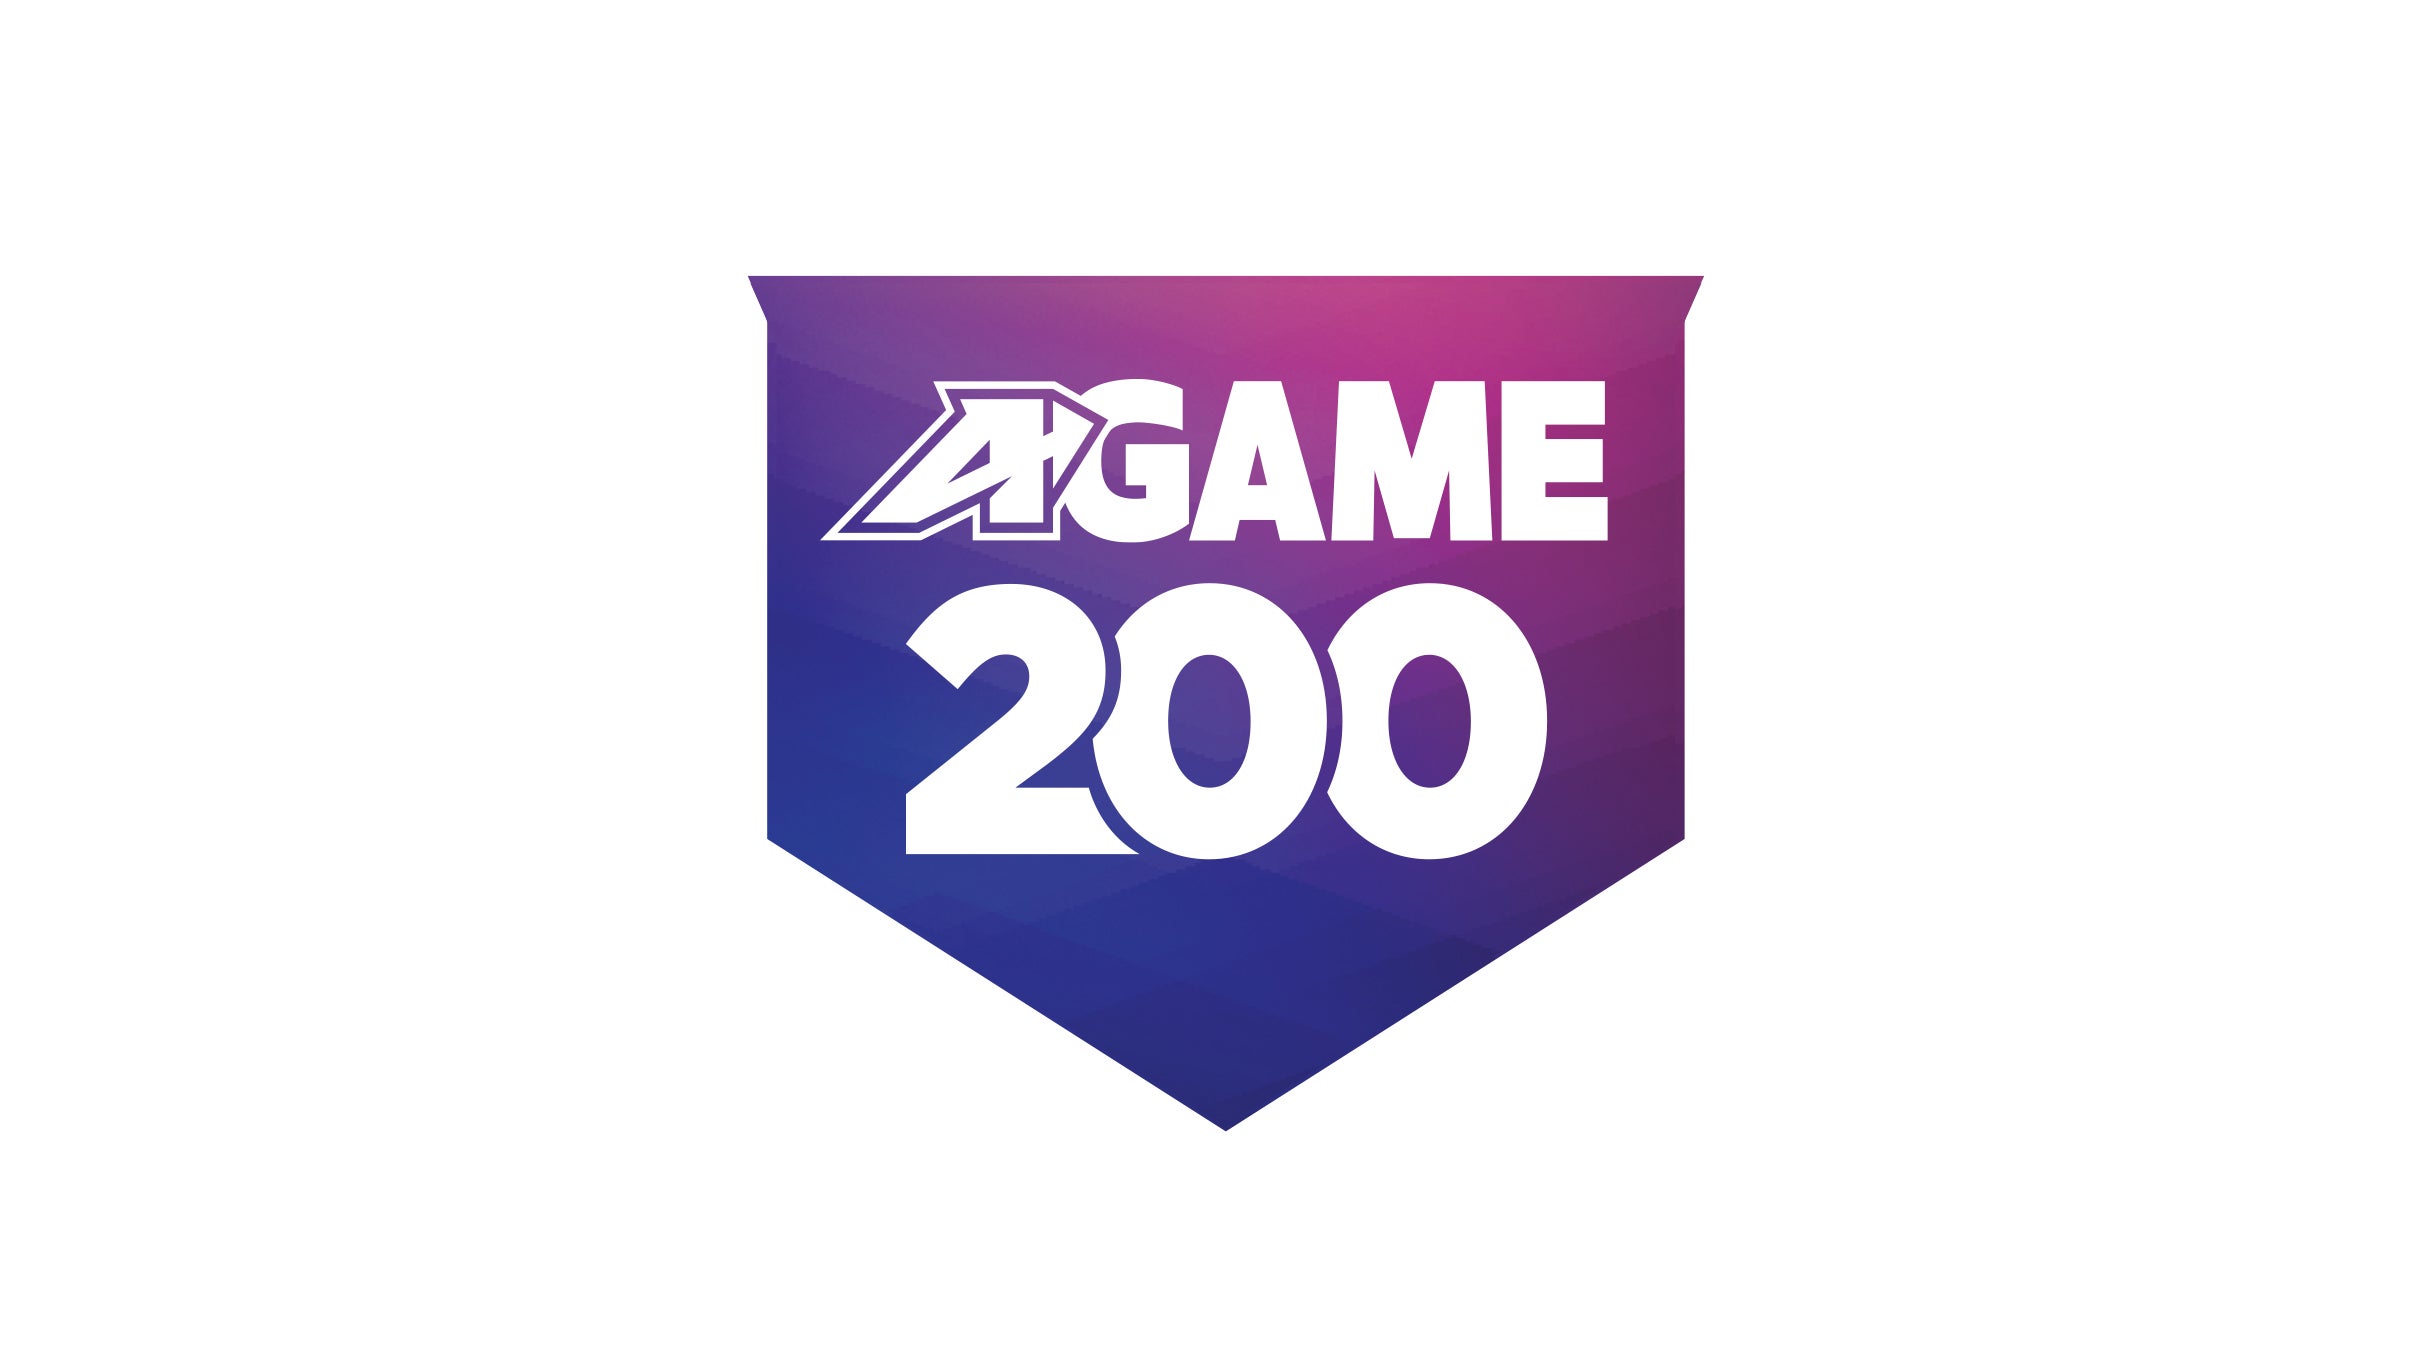 A-GAME 200 presale information on freepresalepasswords.com